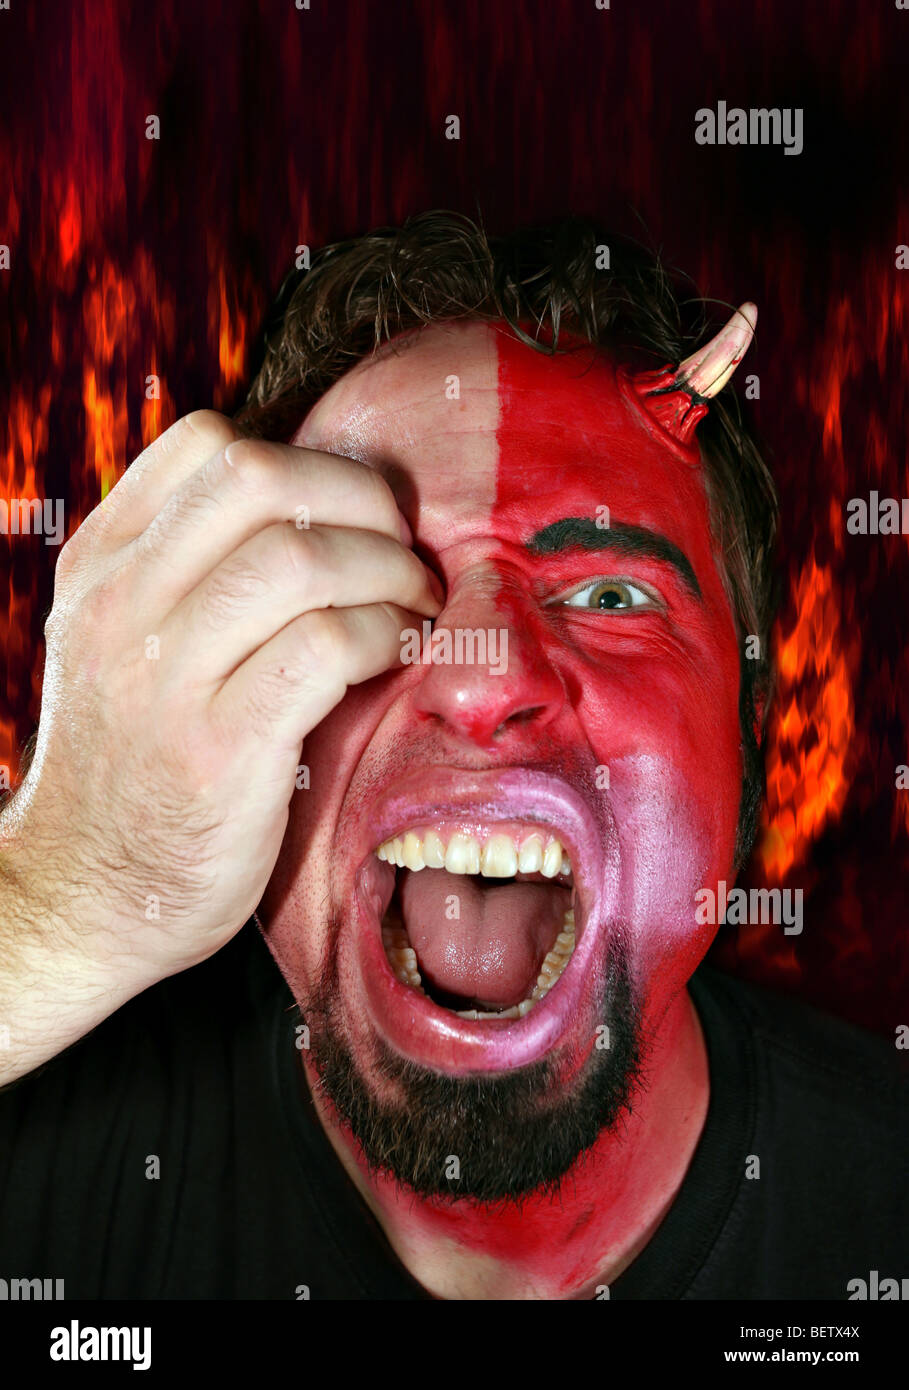 Halb Teufel Monster Mann angegriffen von einer Hand sein Auge ausstechen. Feuer Flammen im Hintergrund. Stockfoto